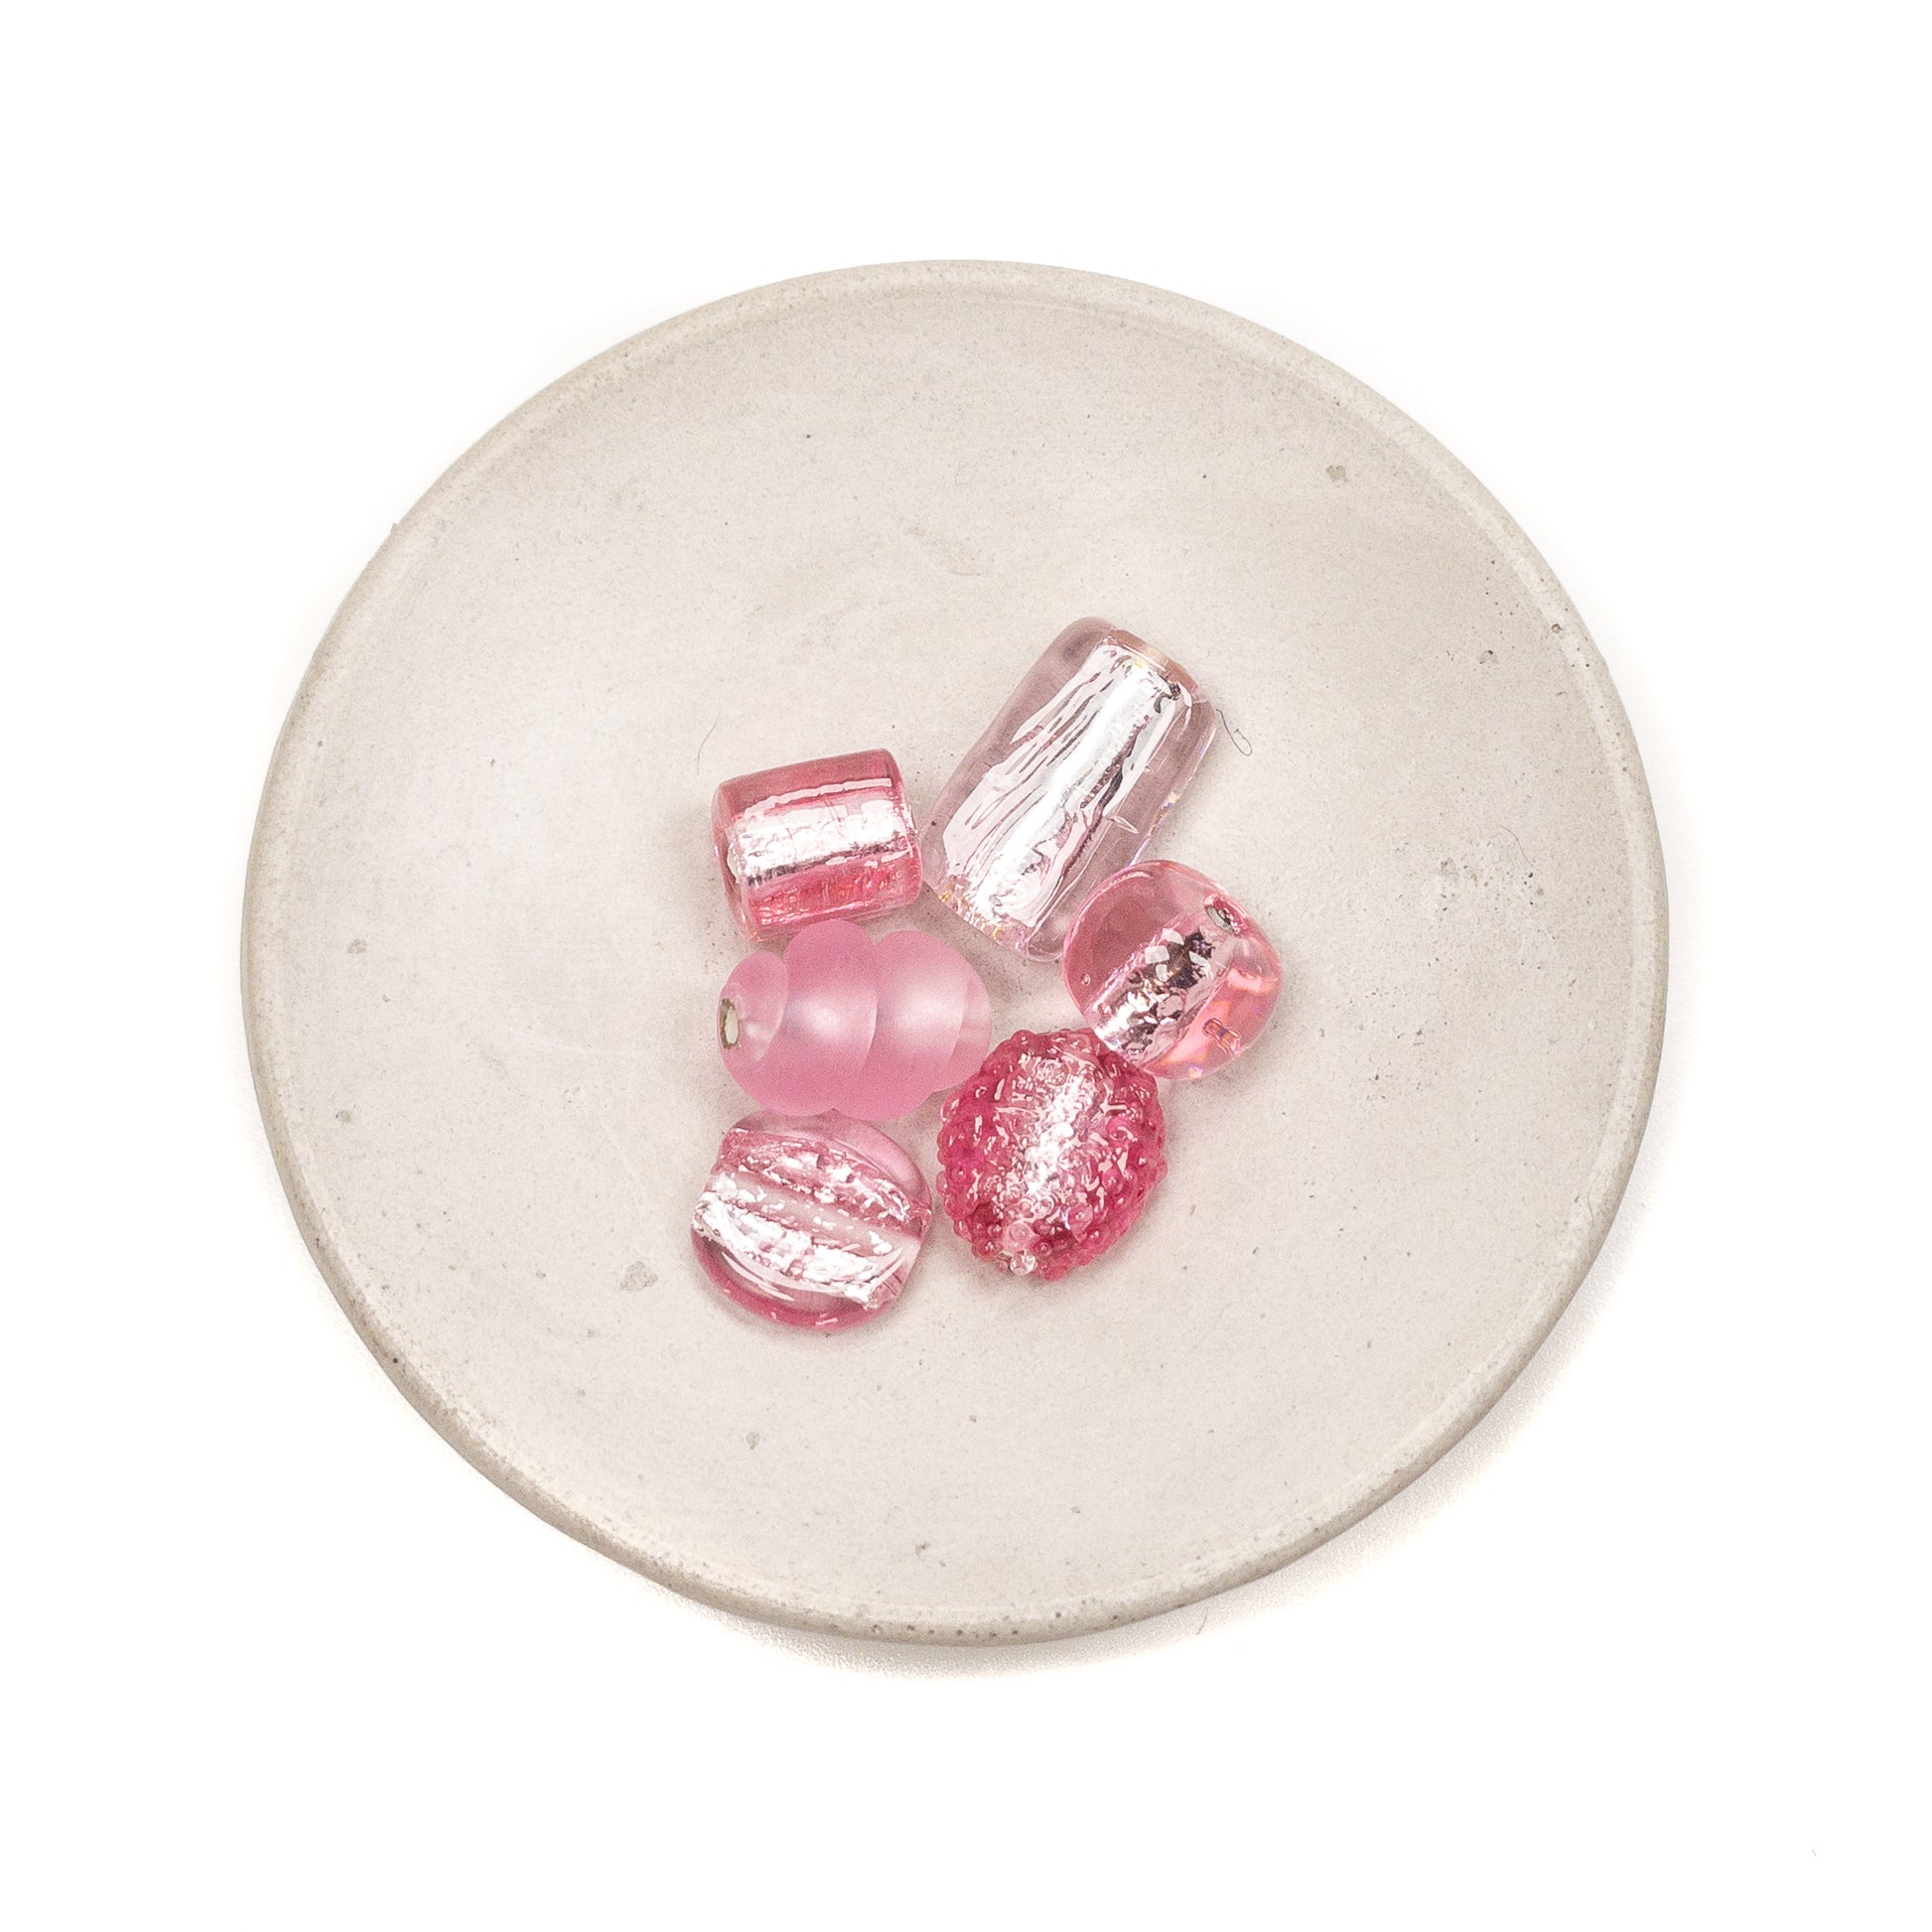 Think Pink Lampwork Glass Bead Mix - 6 pcs.